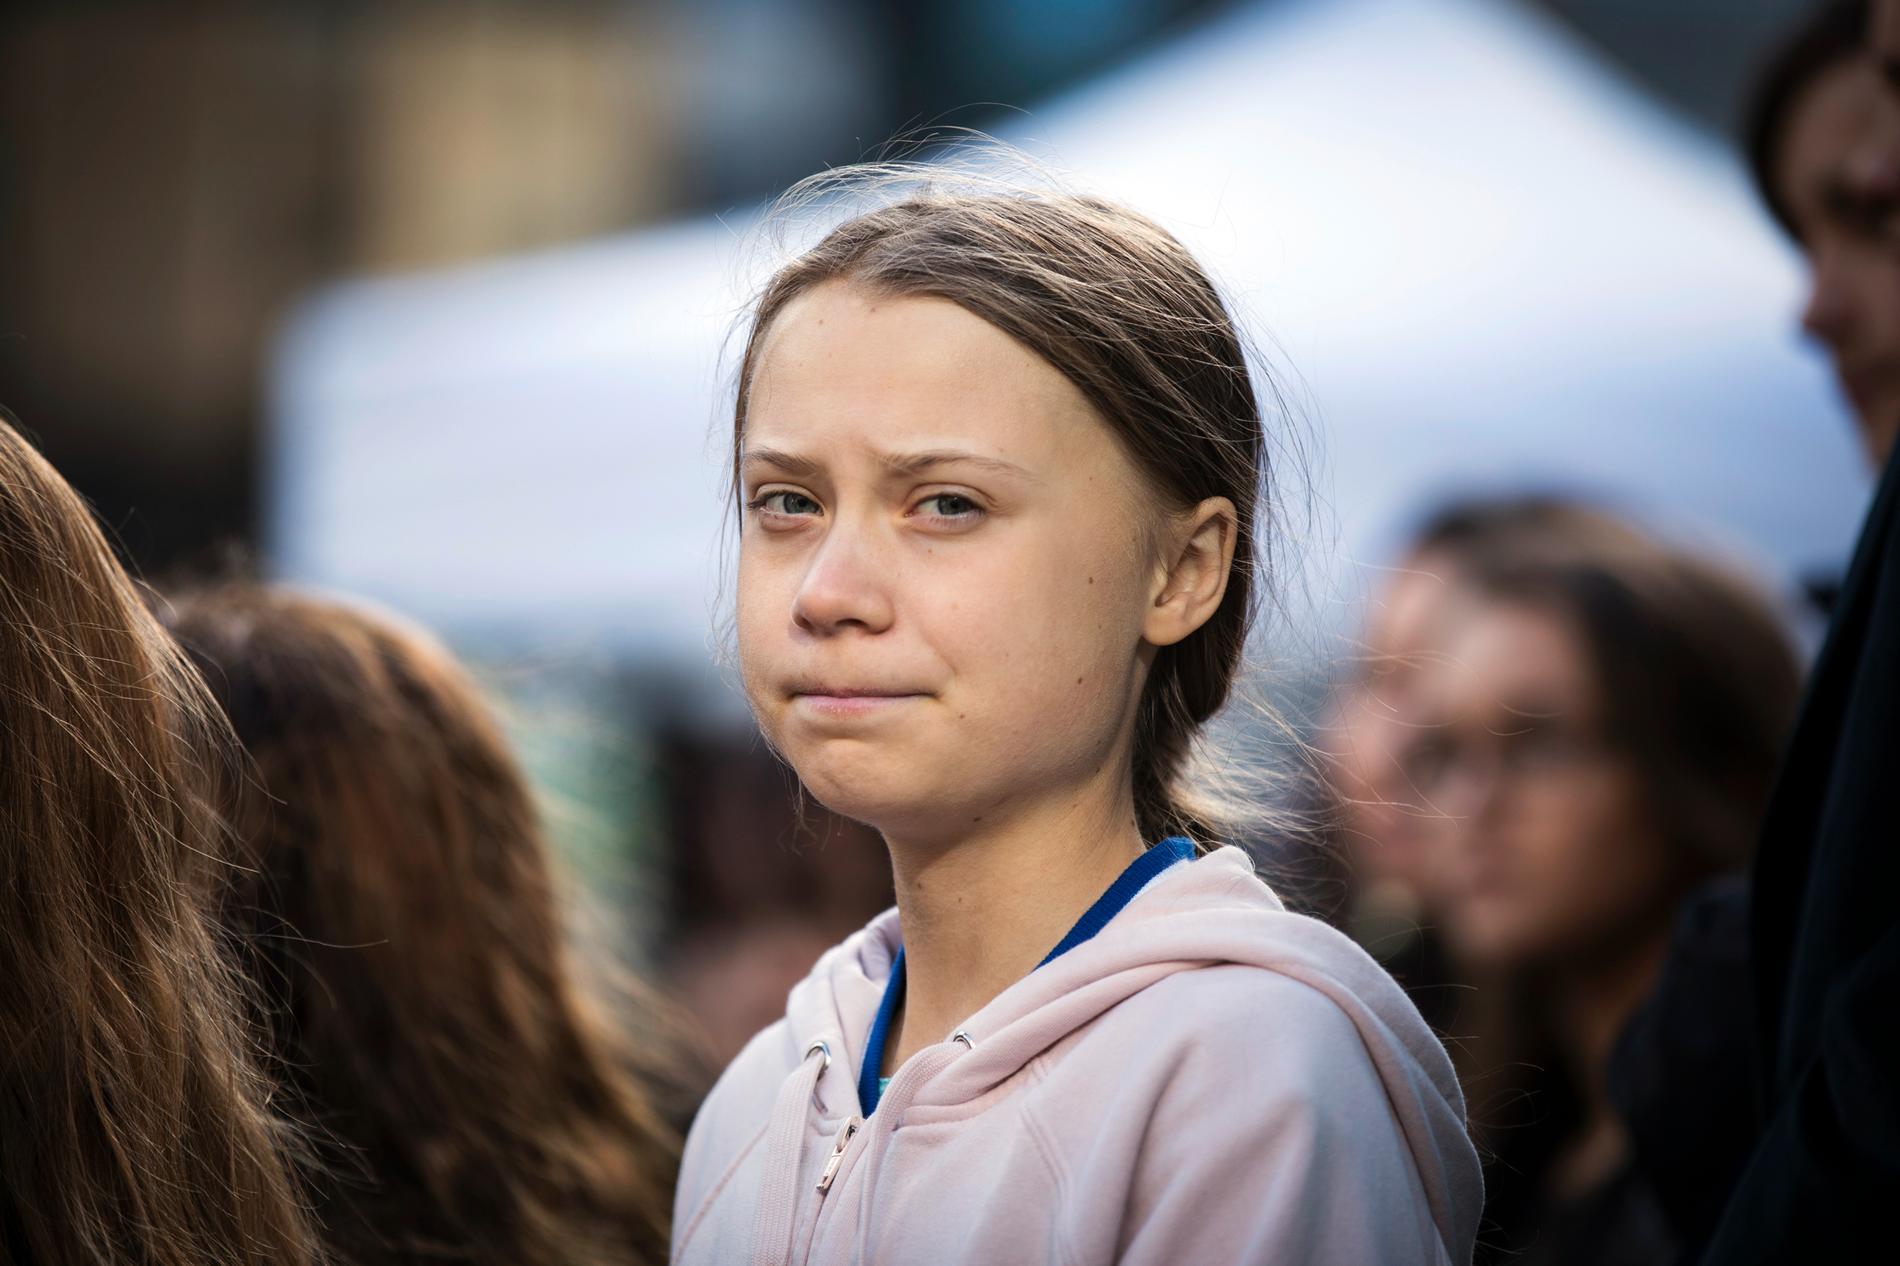 Spanien vill gärna hjälpa klimataktivisten Greta Thunberg med resan från Nordamerika till Madrid och klimatmötet där i december. Arkivbild.